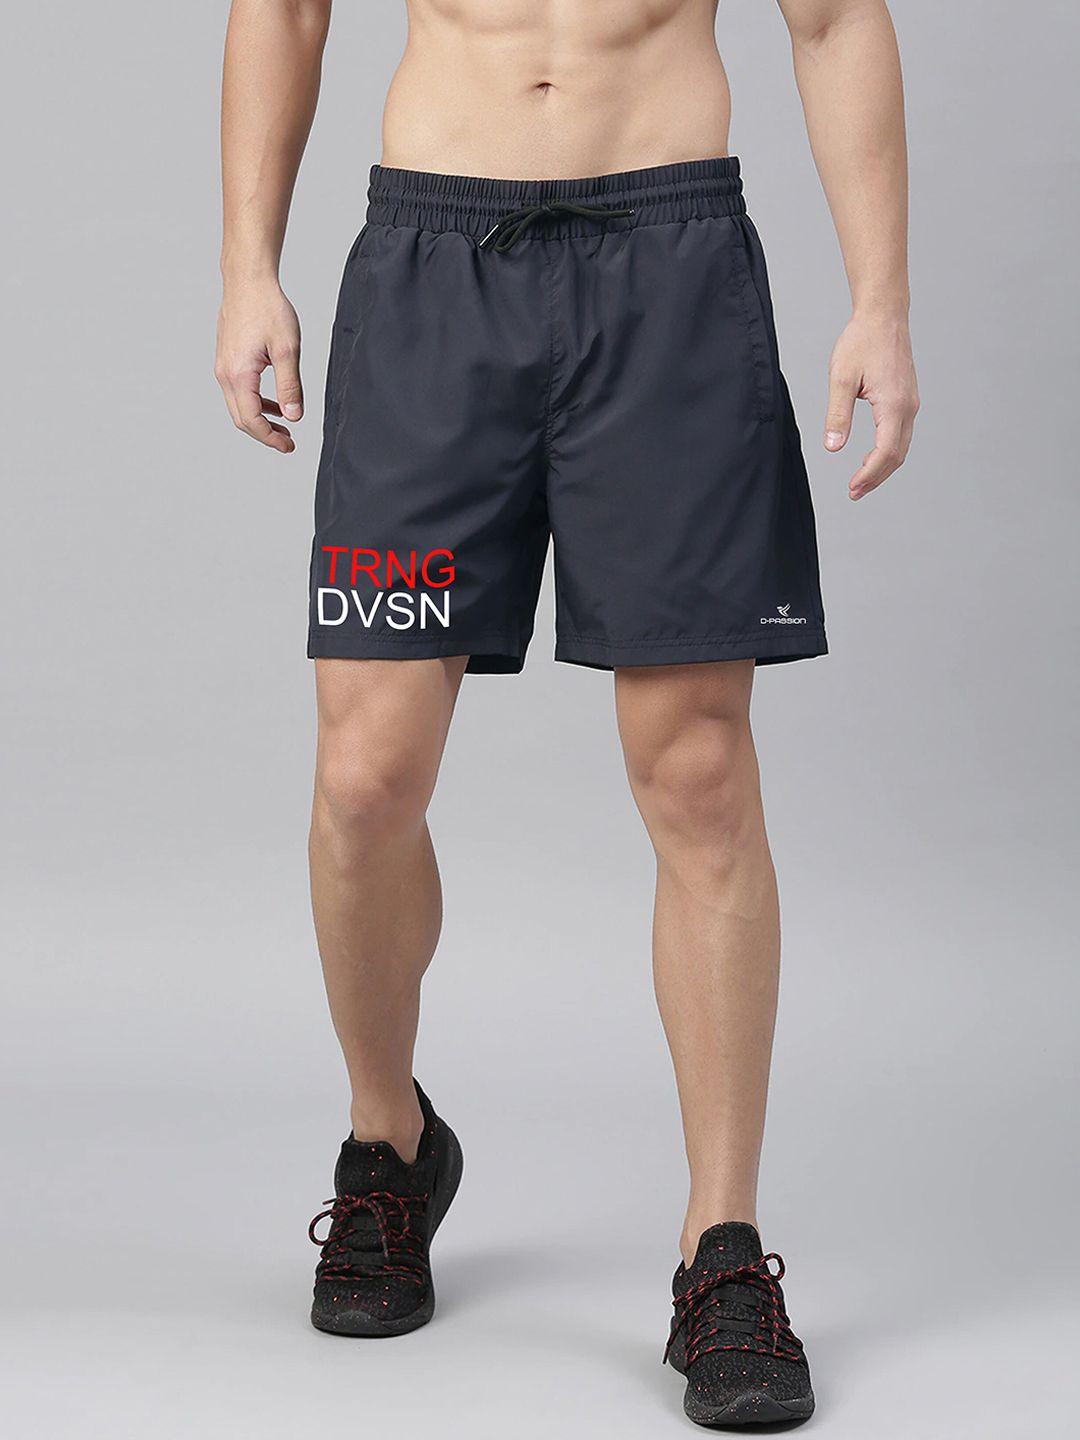 dpassion men's navy blue running sports shorts